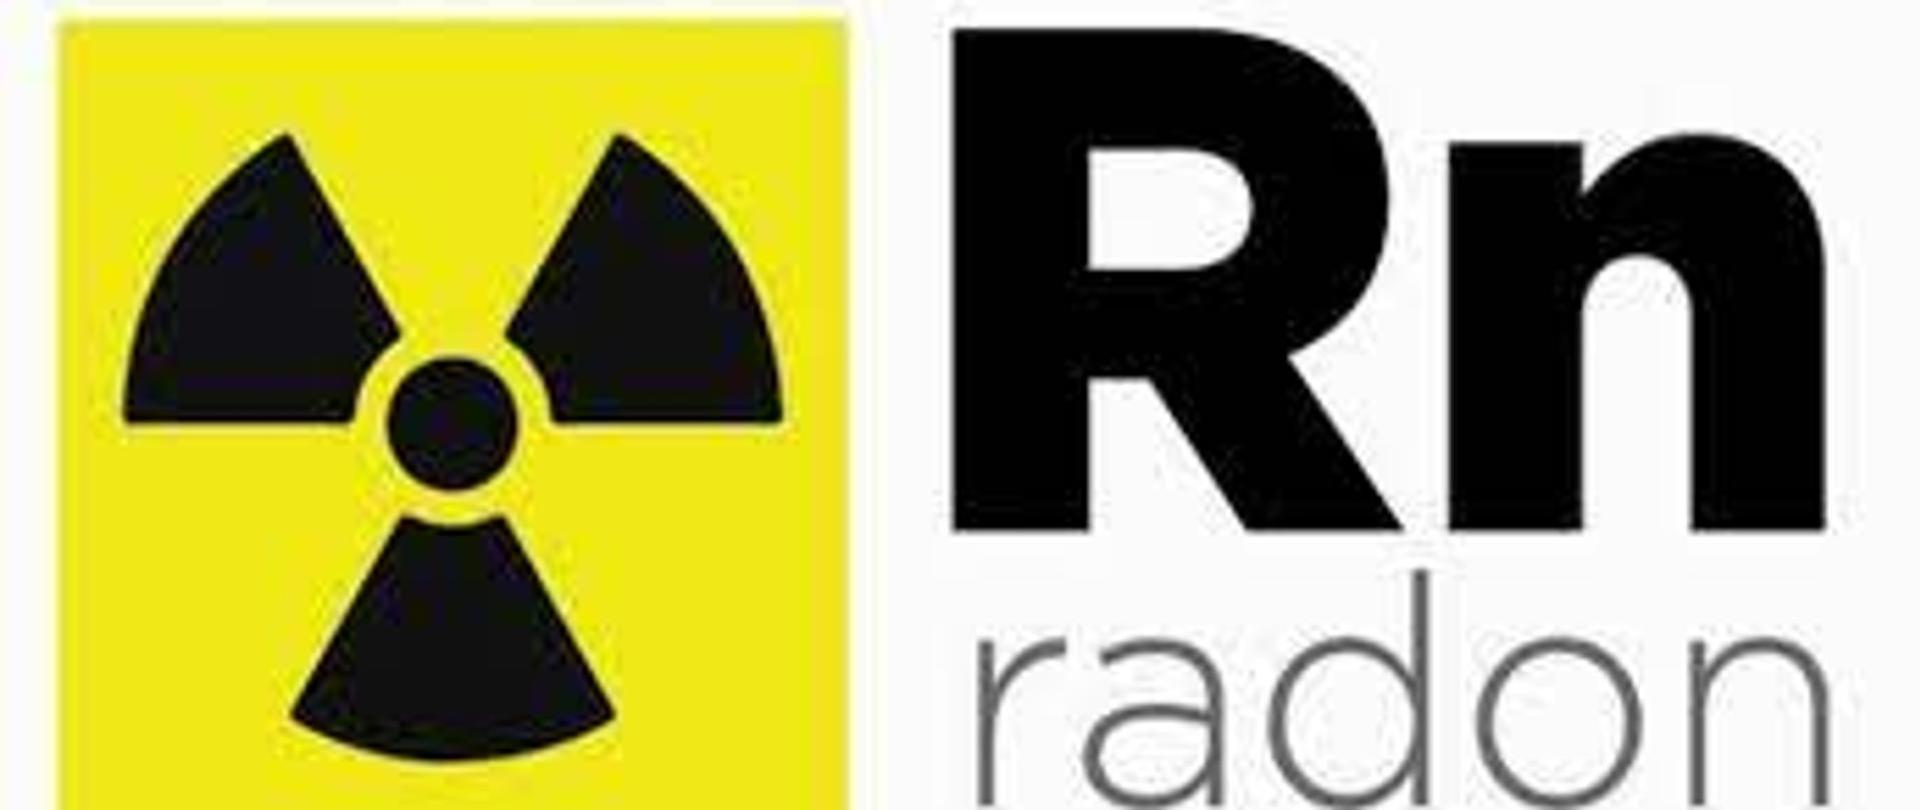 Z lewej strony na żółtym tle zamieszczono symbol promieniowania (trzy poszerzone śmigła z czarna kropka na środku). Po prawej stronie na górze Symbol pierwiastka Rn, na dole napis szary "radon"